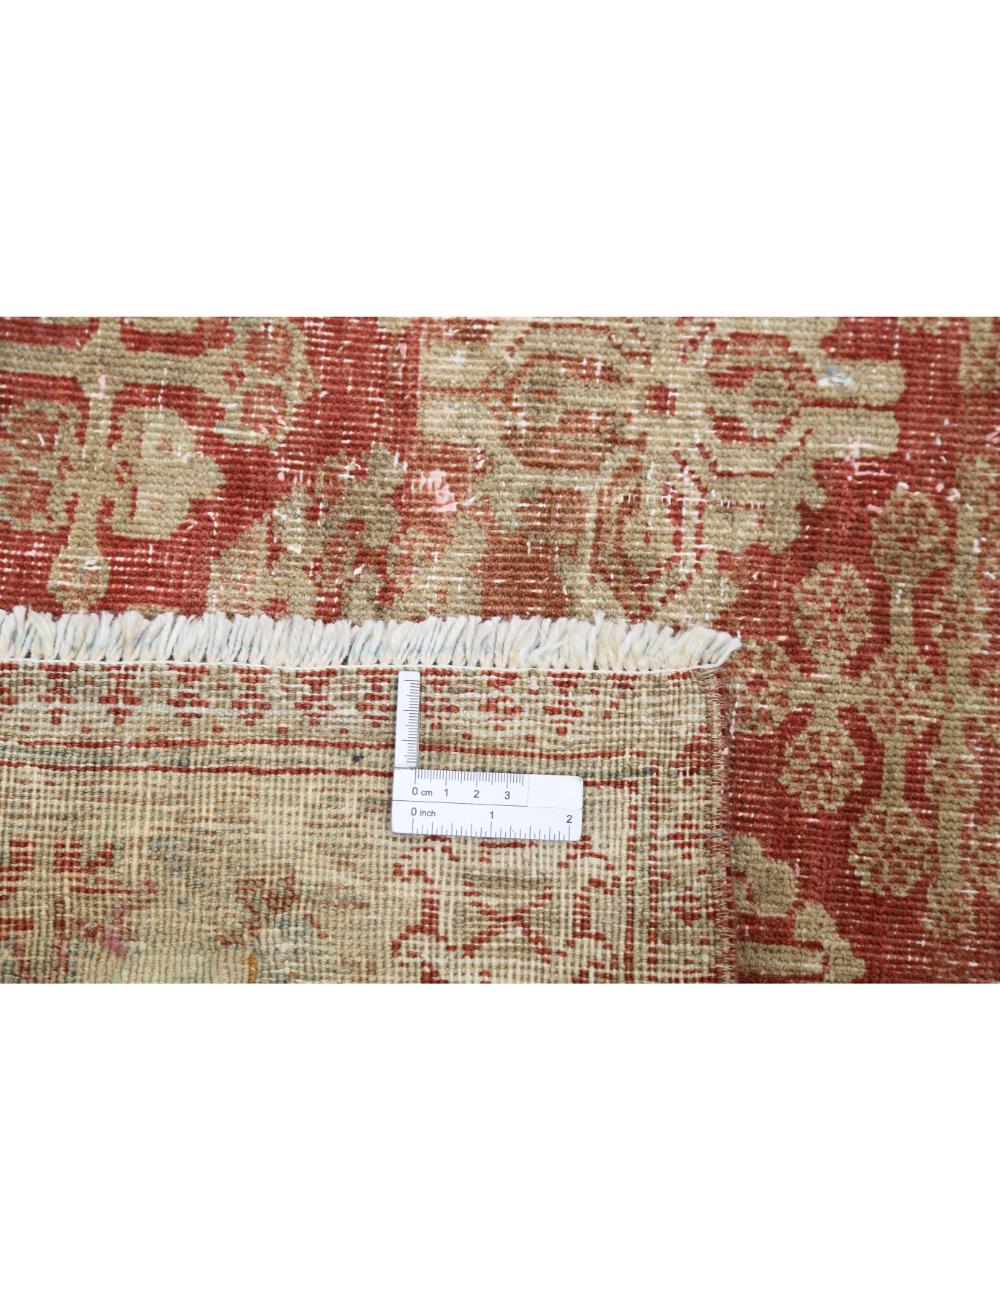 Hand Knotted Vintage Persian Josheghan Wool Rug - 10'3'' x 16'10'' Arteverk Arteverk Rugs